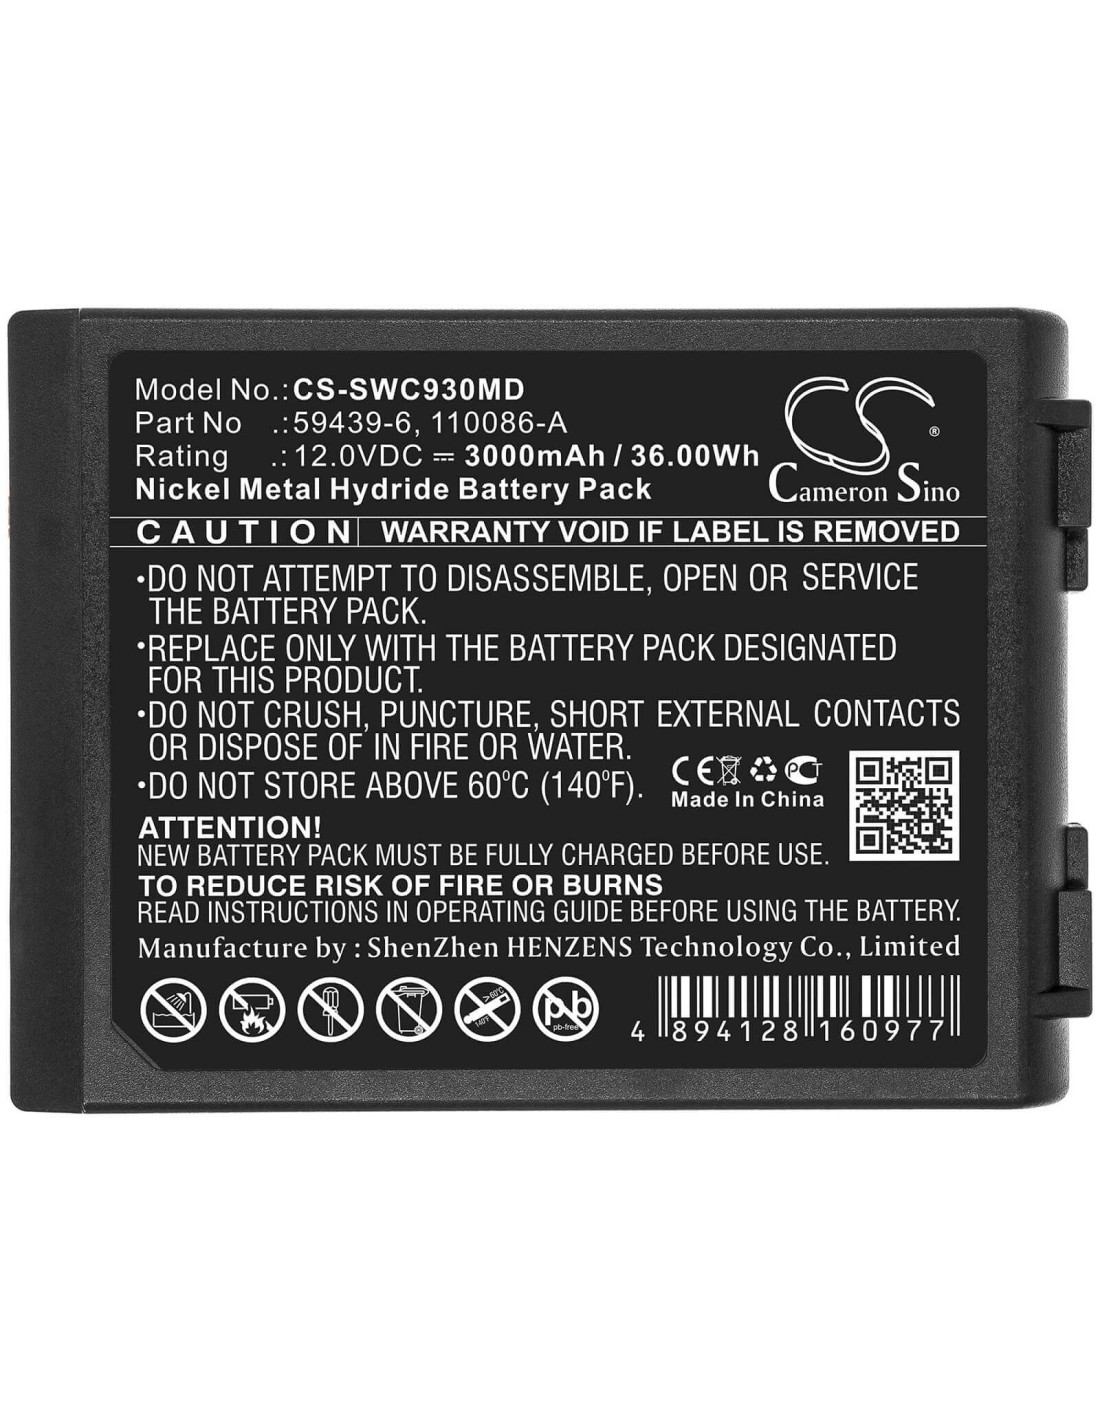 Battery for Simonson-wheel, Defibrillator Cardio Aid Mc+, Defibrillator Cardioaid 930 12V, 3000mAh - 36.00Wh